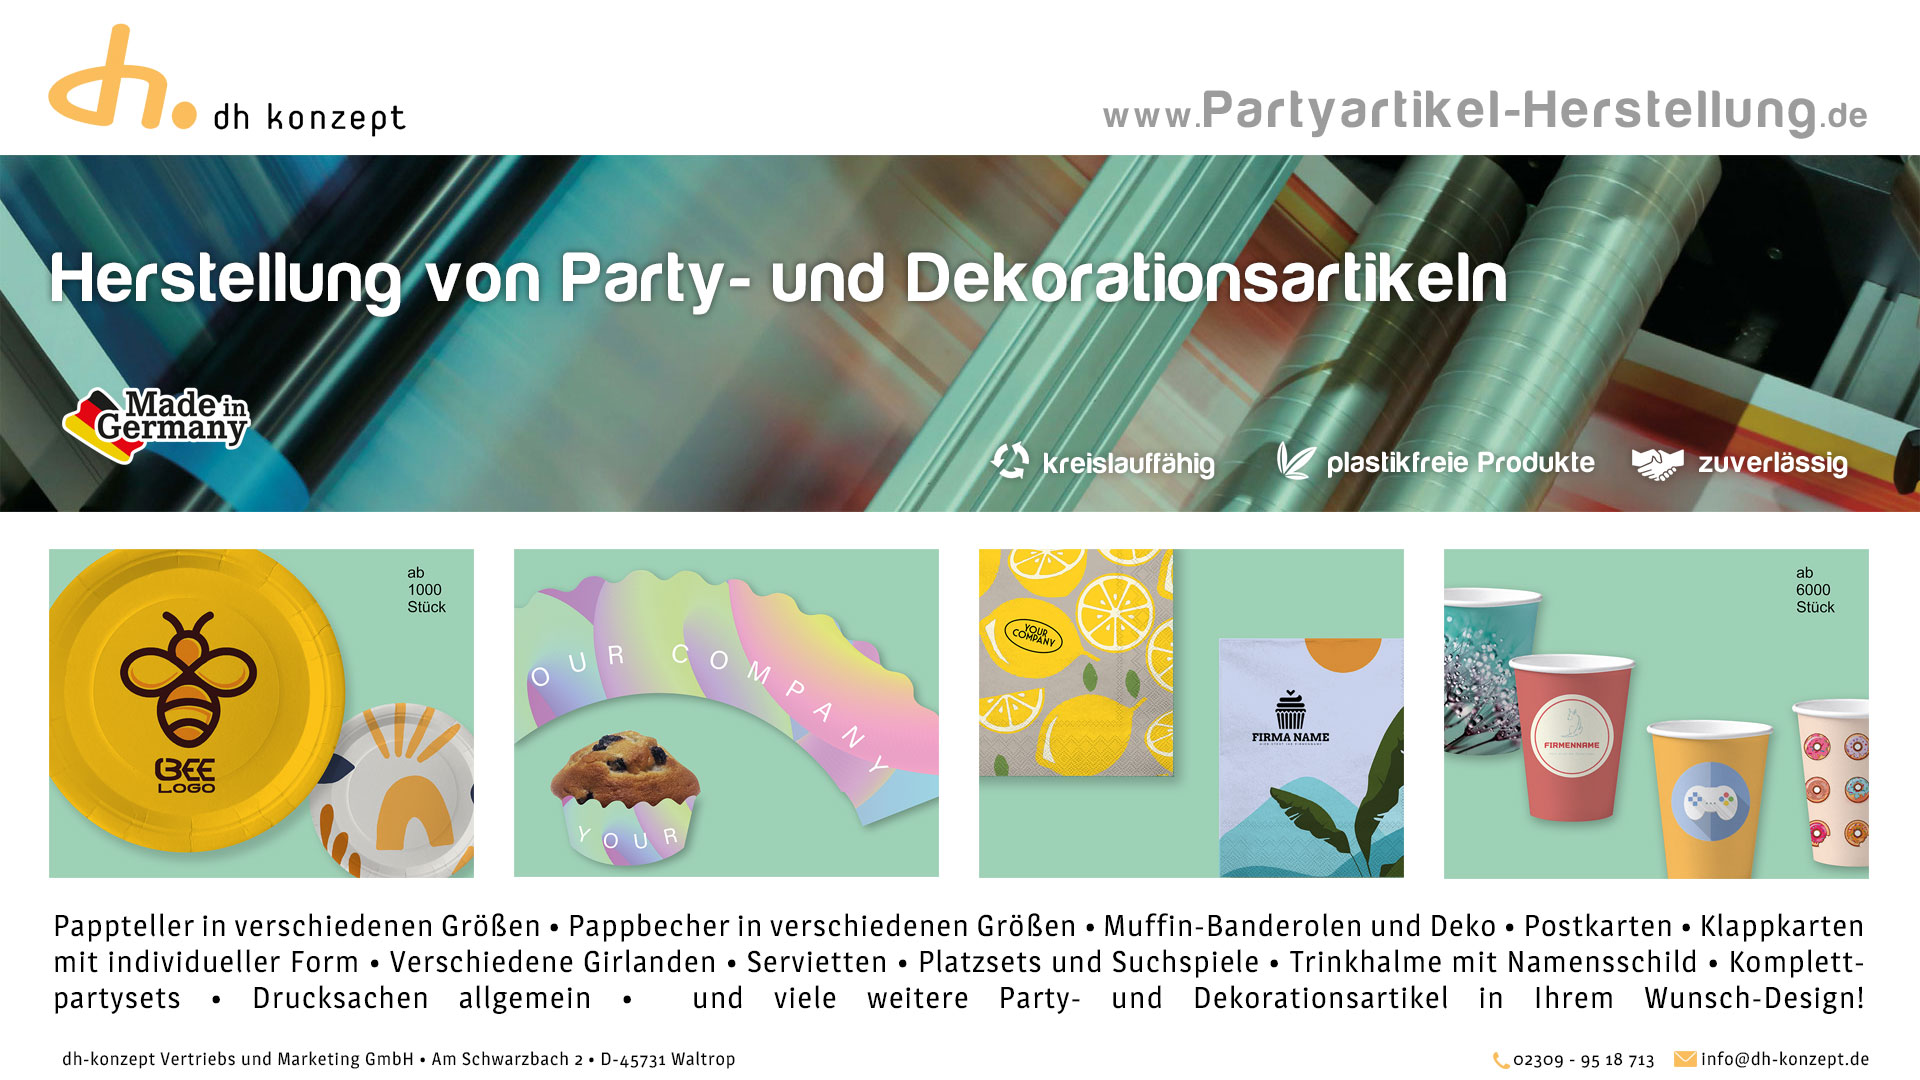 (c) Partyartikel-herstellung.de